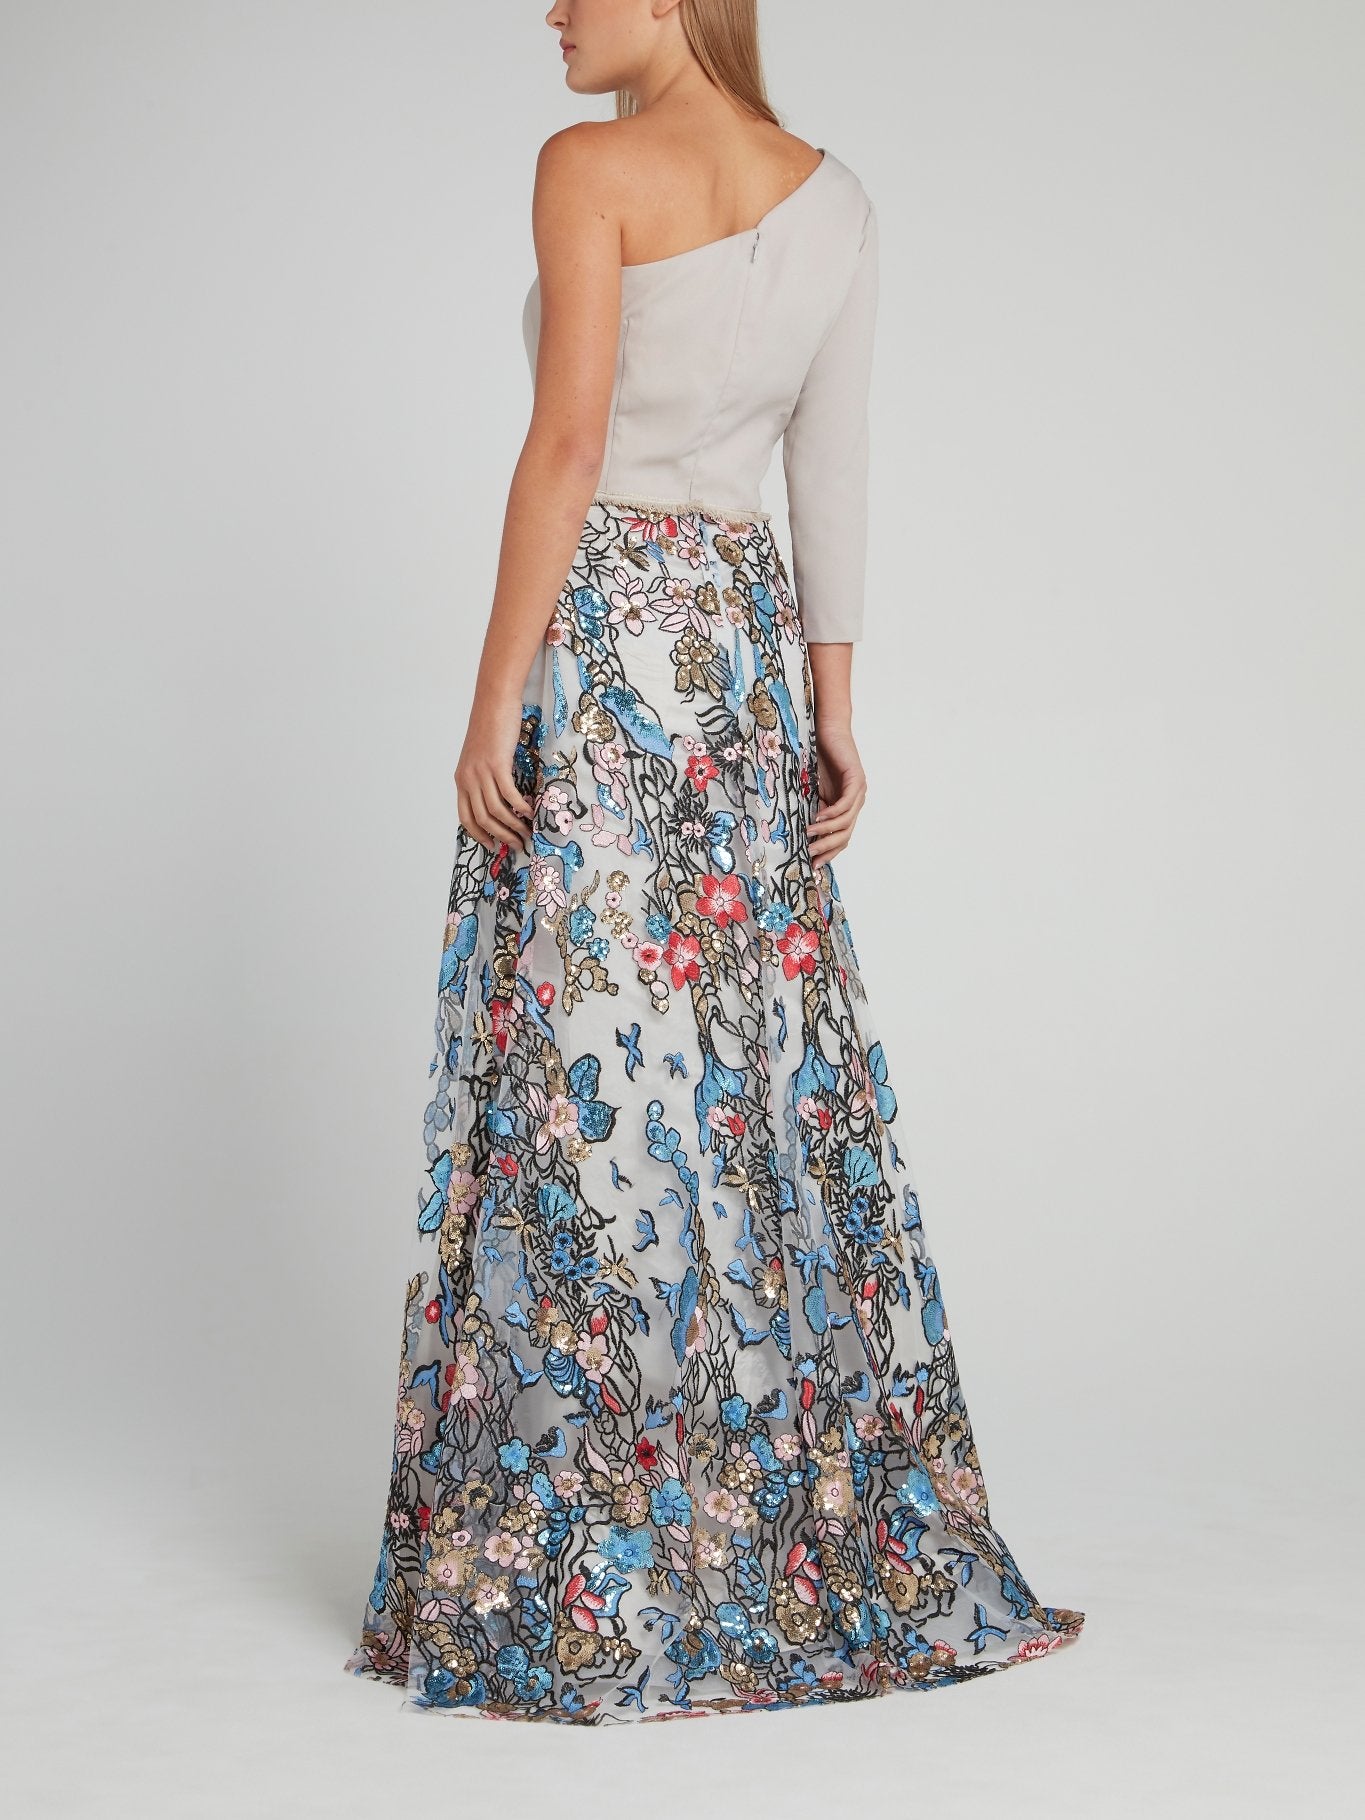 One Shoulder Sequin Embellished Dress